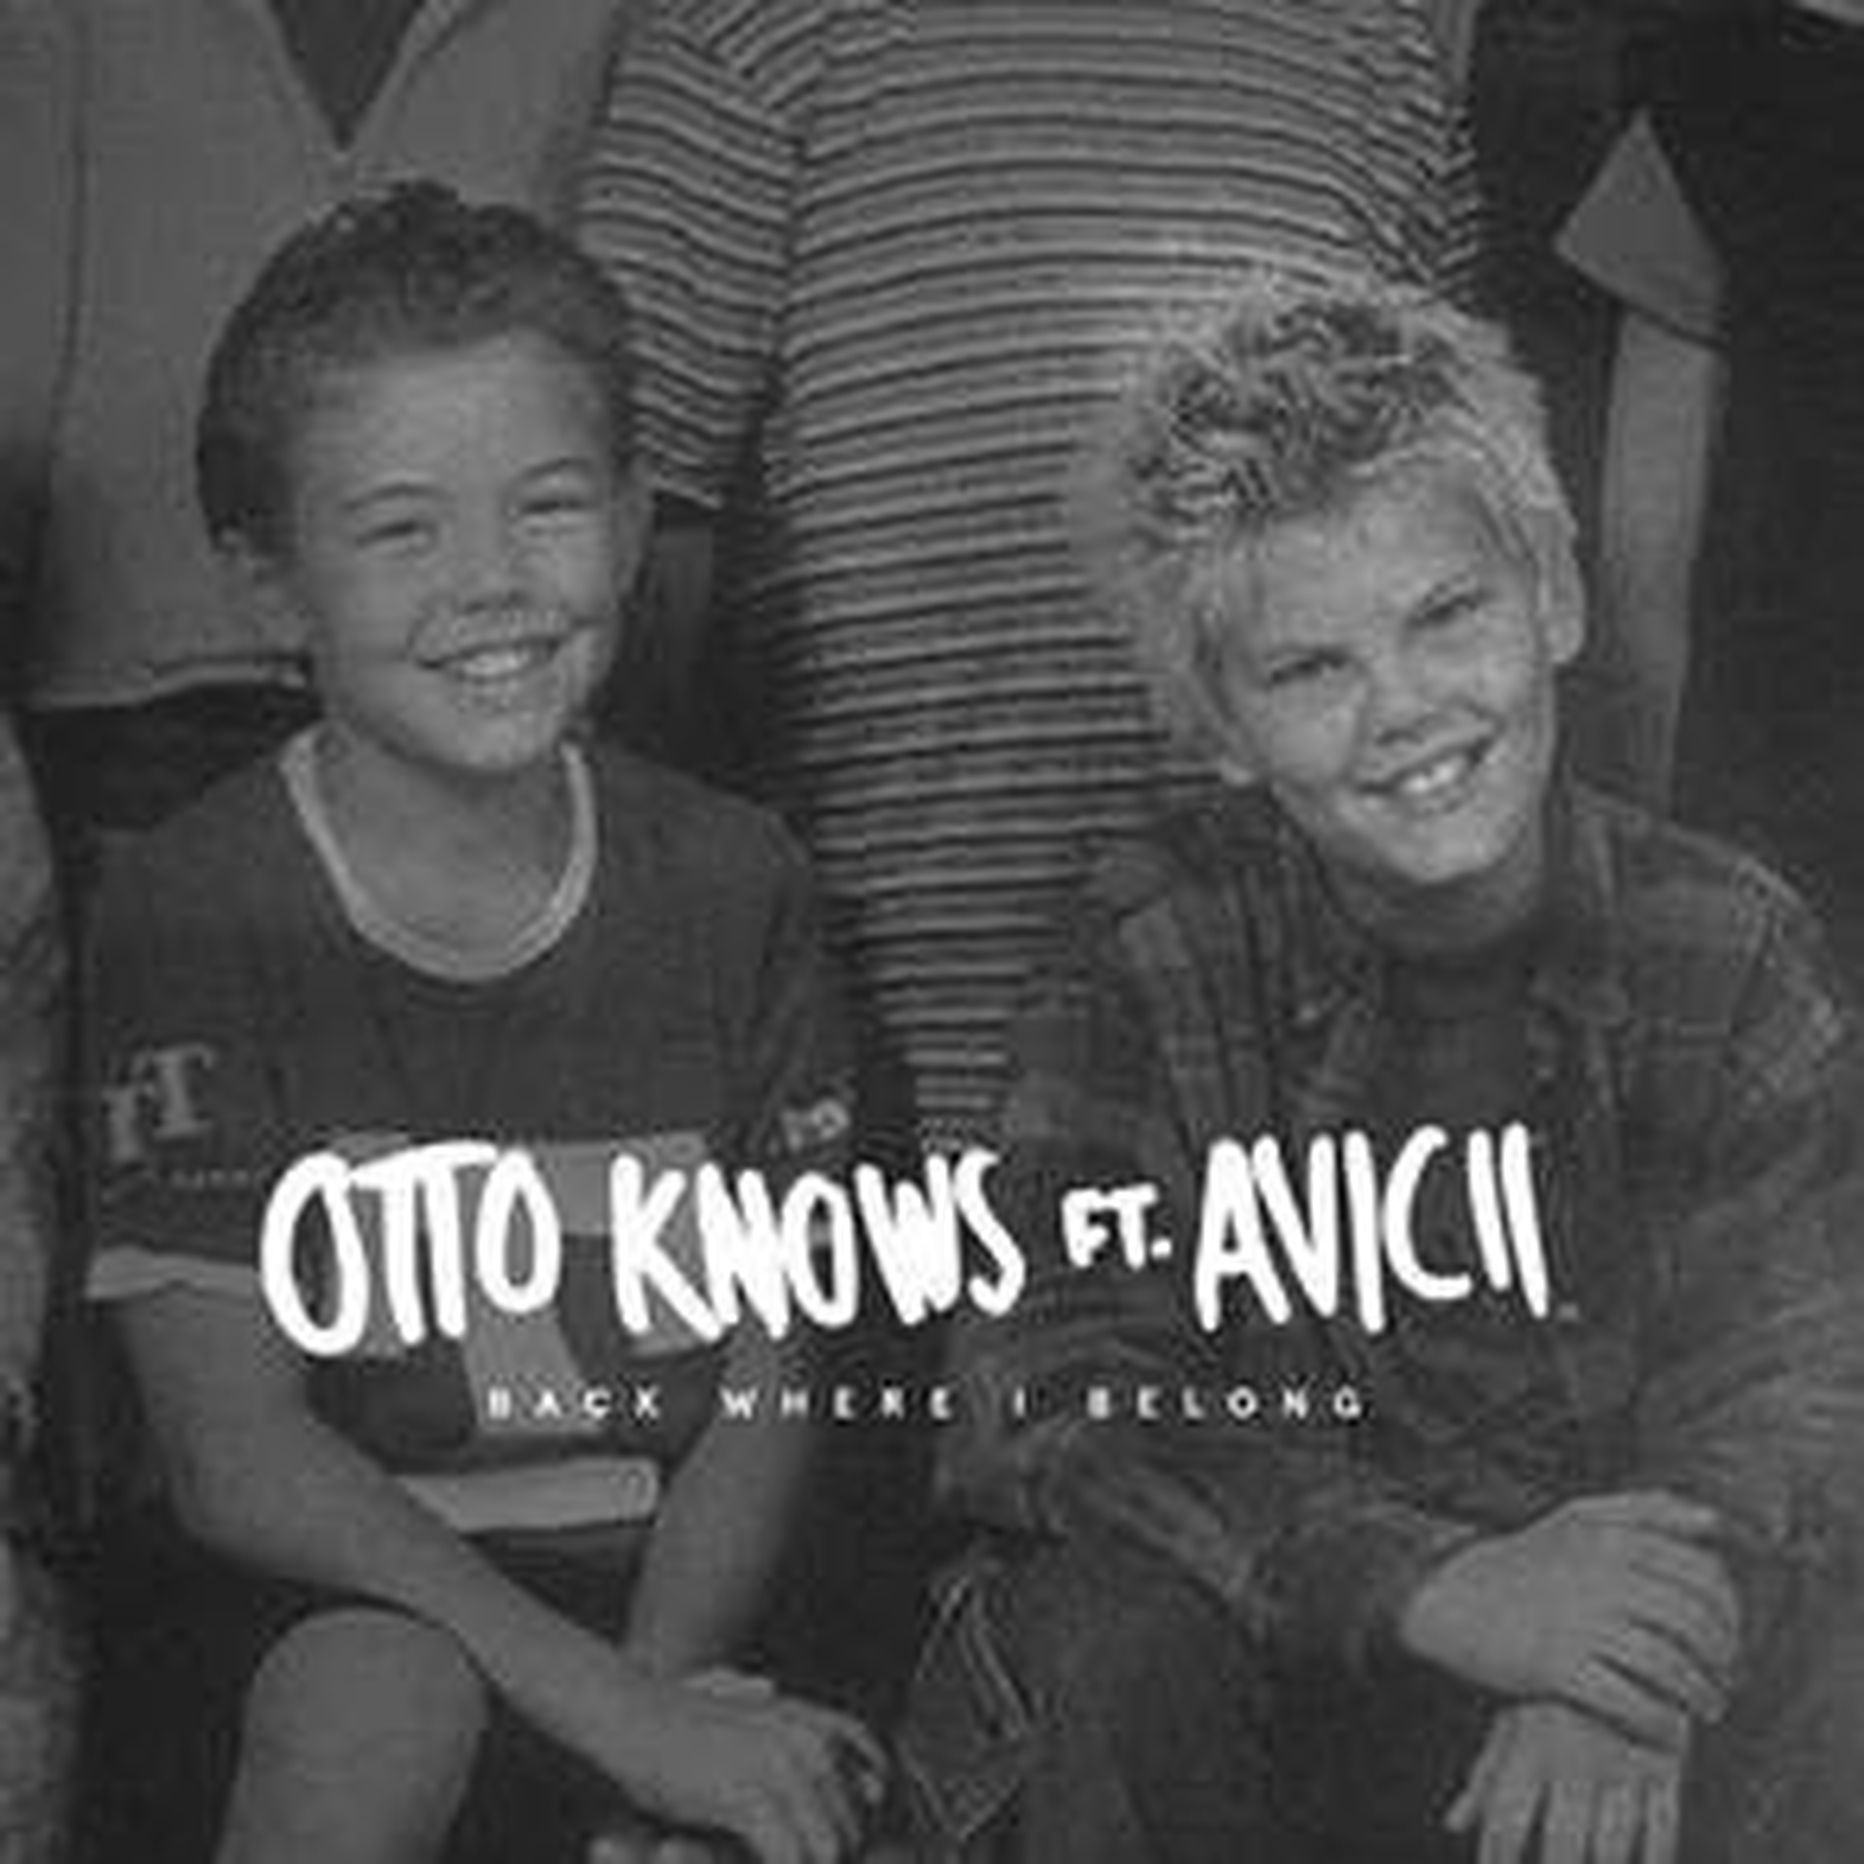 Otto Knows ja Avicii